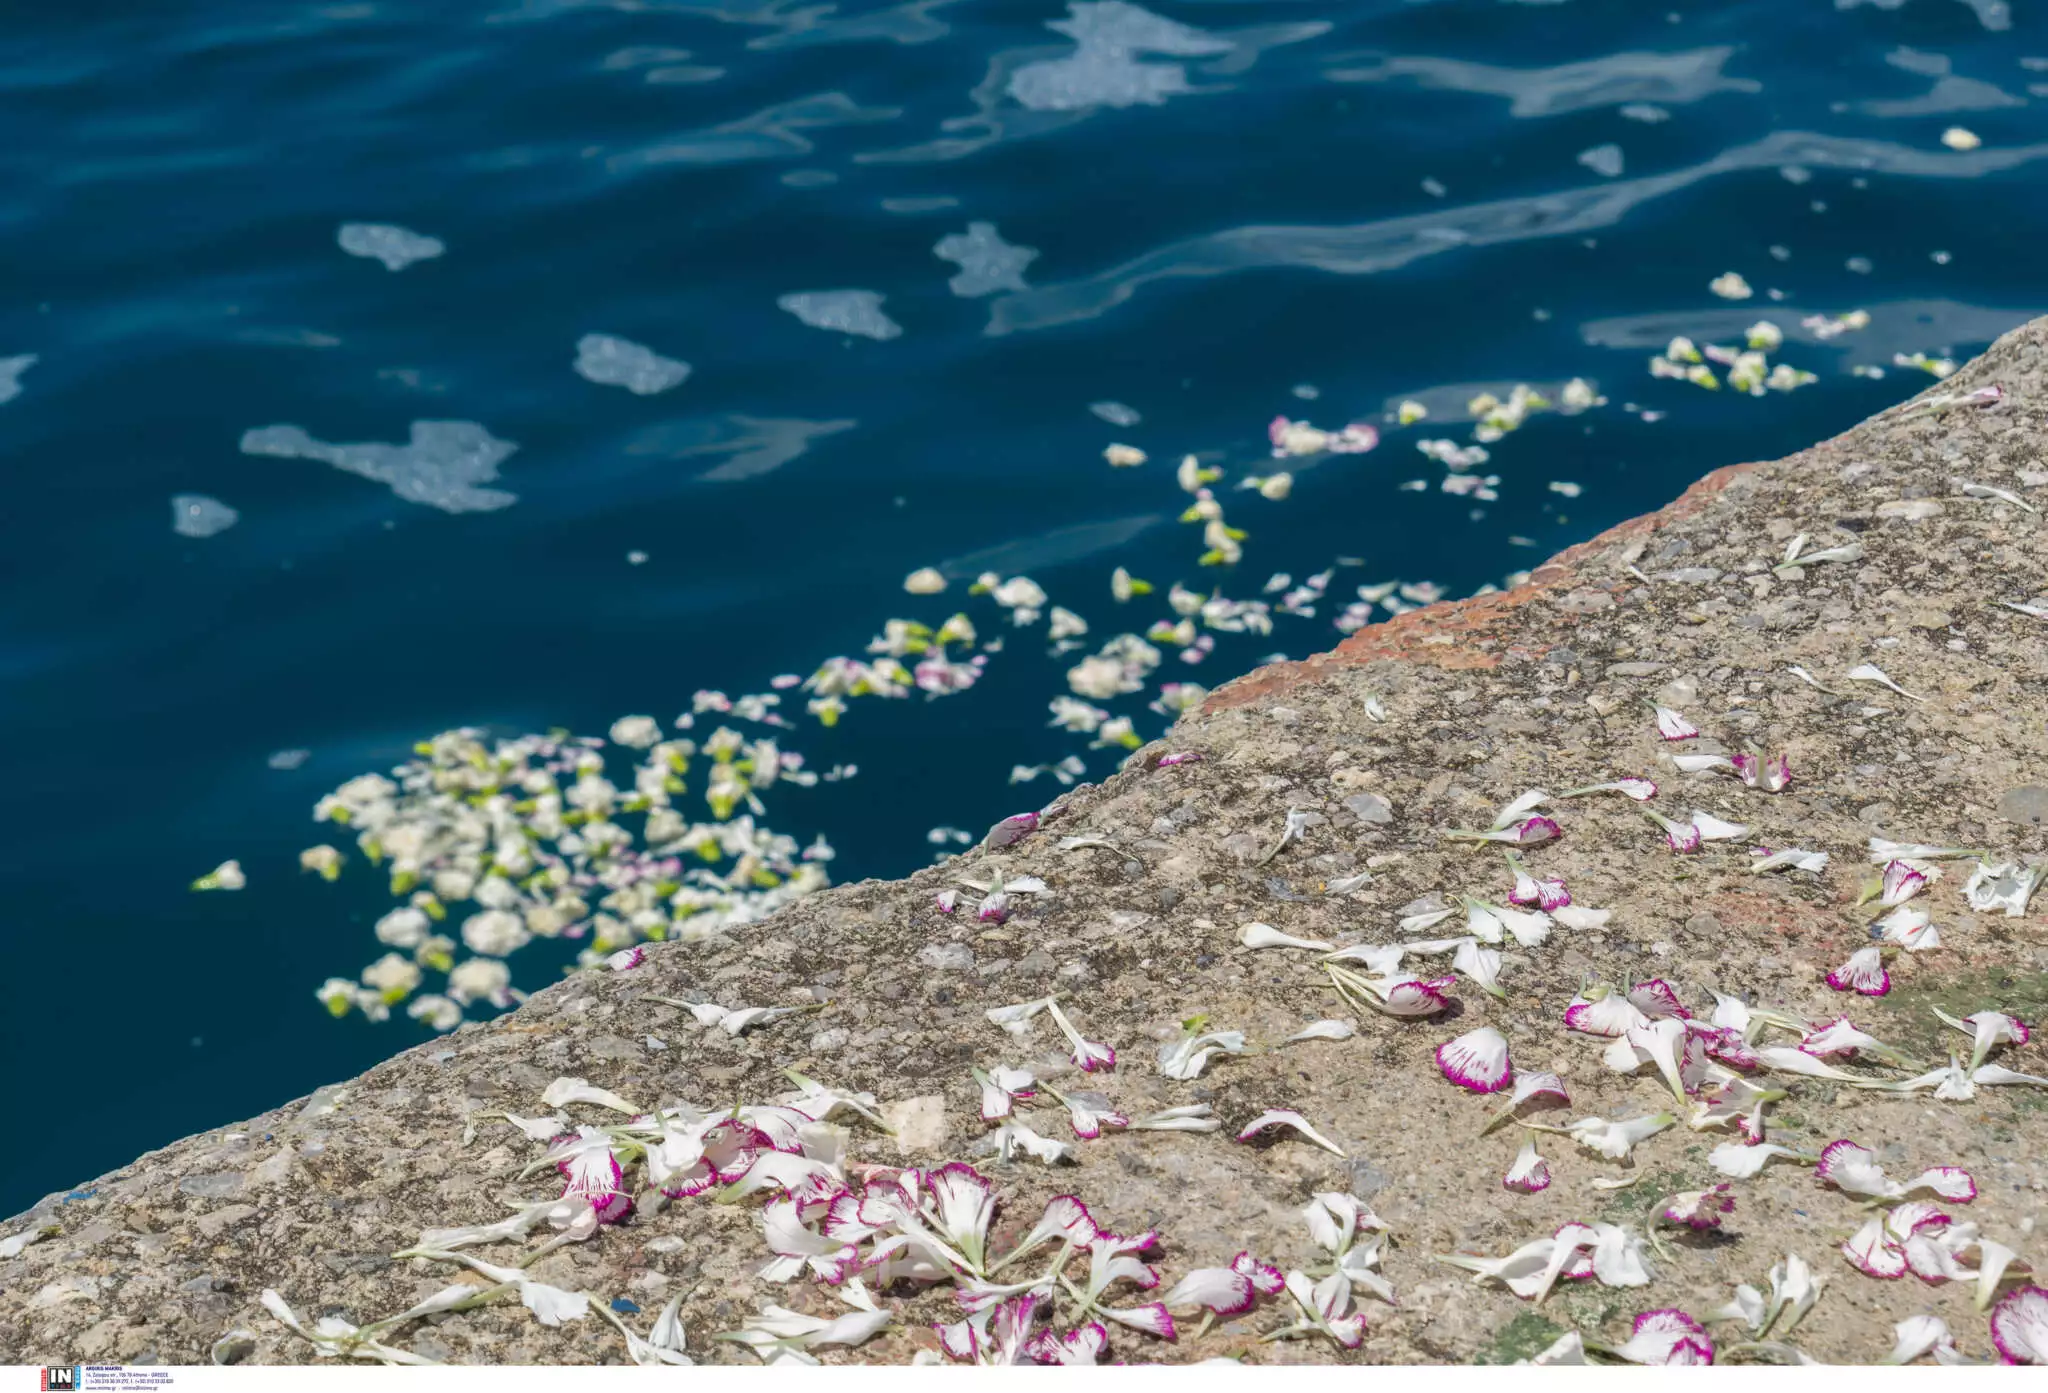 Καλαμάτα: Τρισάγιο για τα θύματα του ναυαγίου με ροδοπέταλα στη θάλασσα